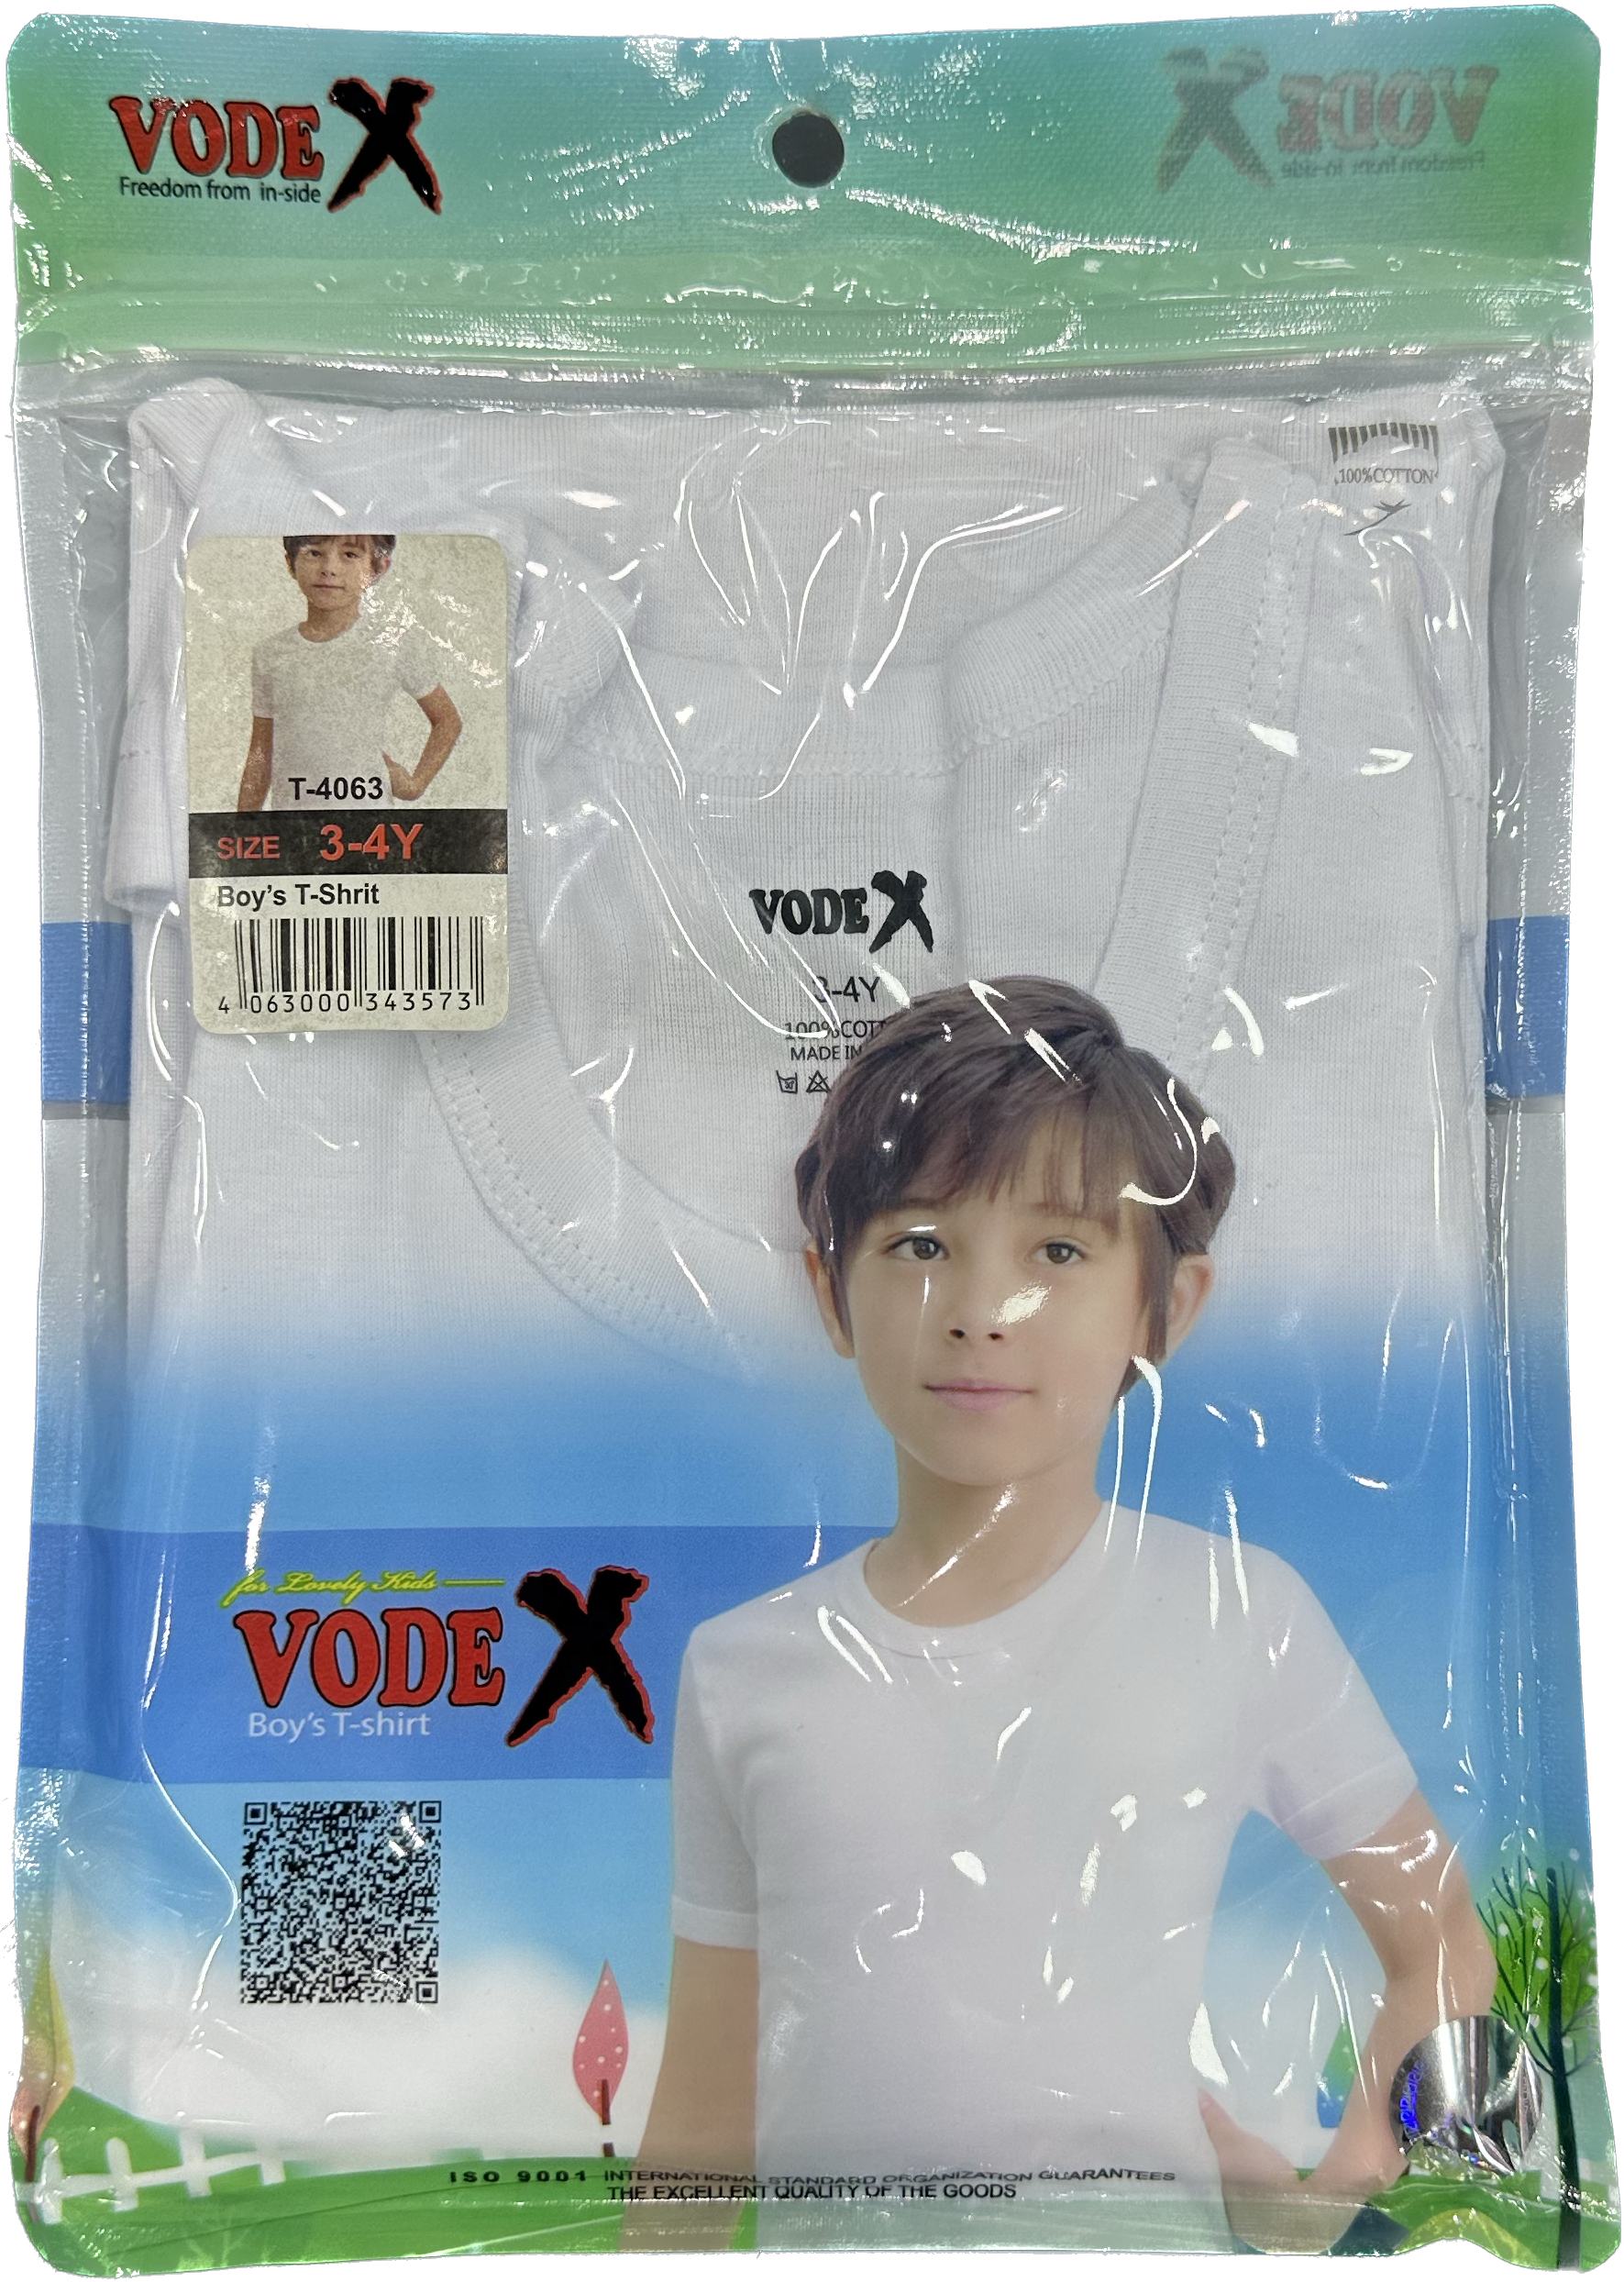 VODEX Boys half pants - Underwear white wholesale 12 pcs - carton